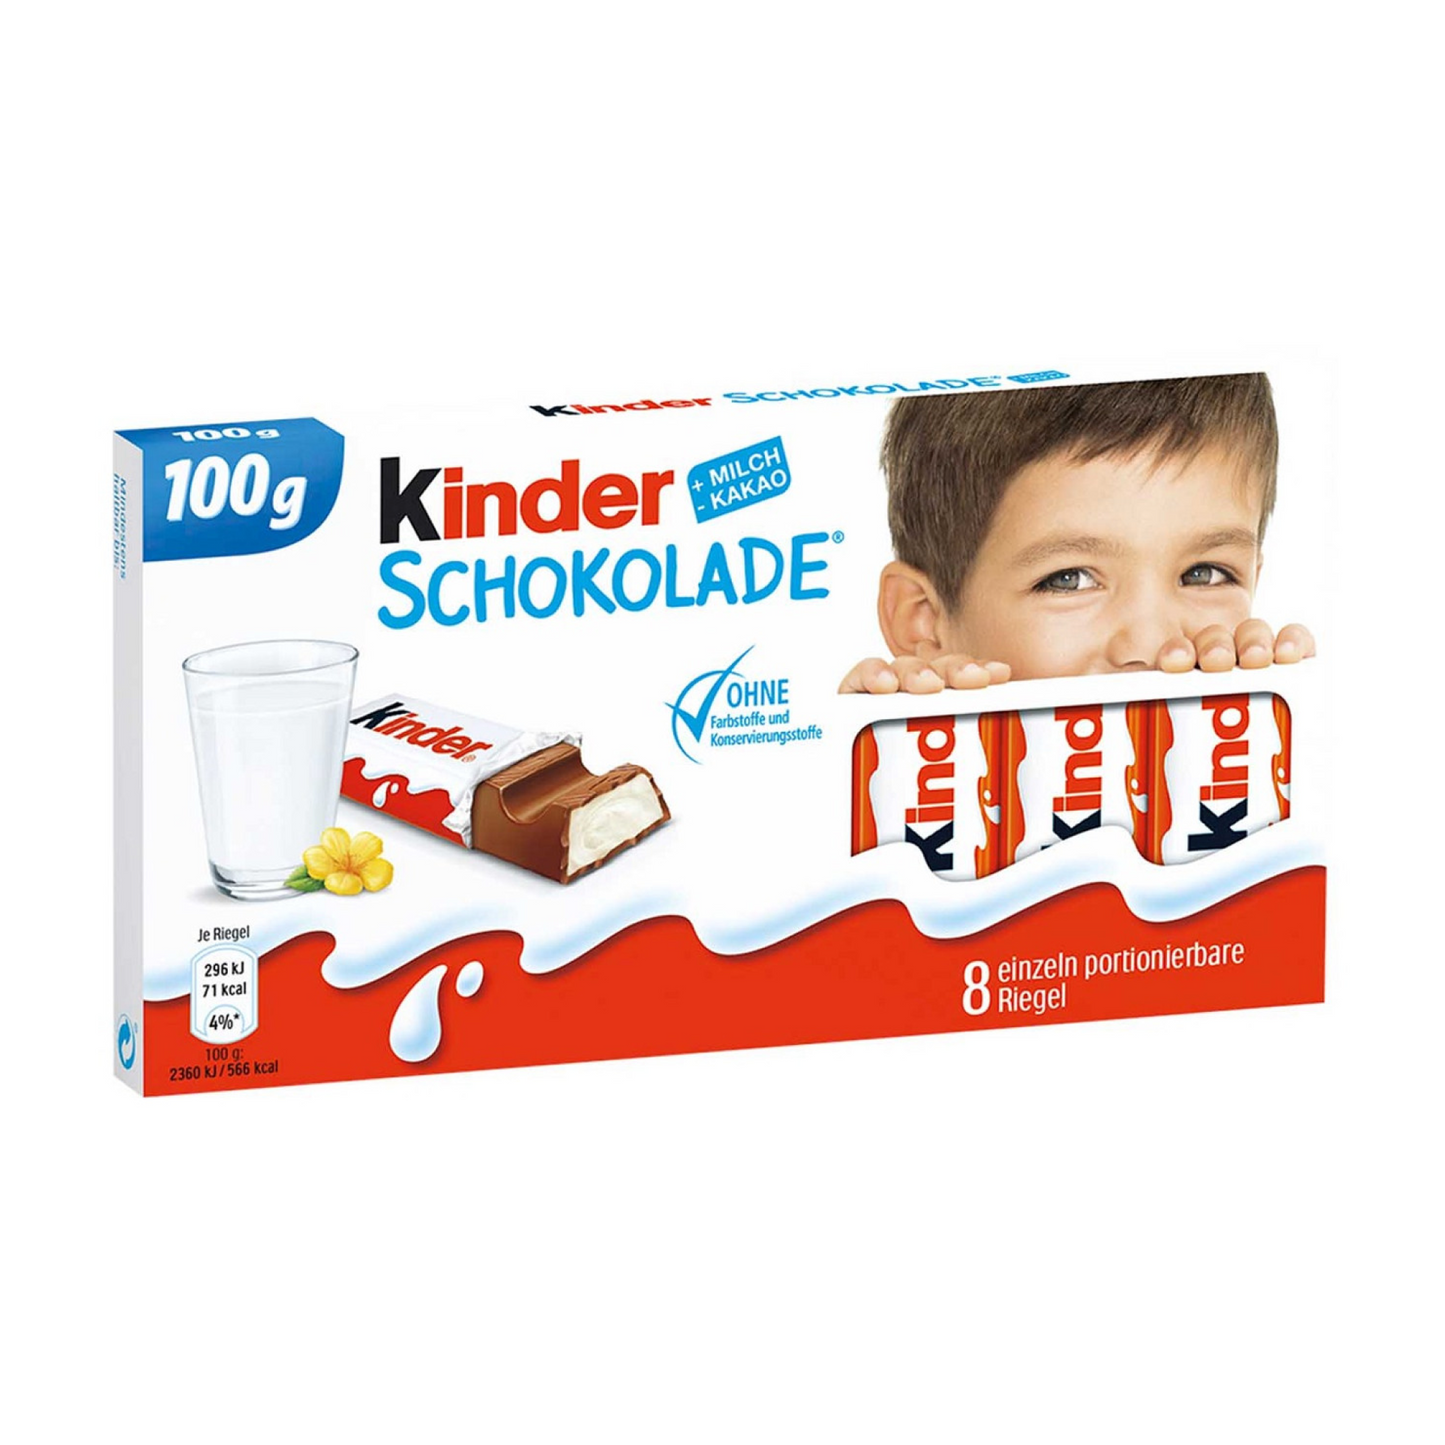 Kinder Schokolade Riegeln 8 Pack 100g